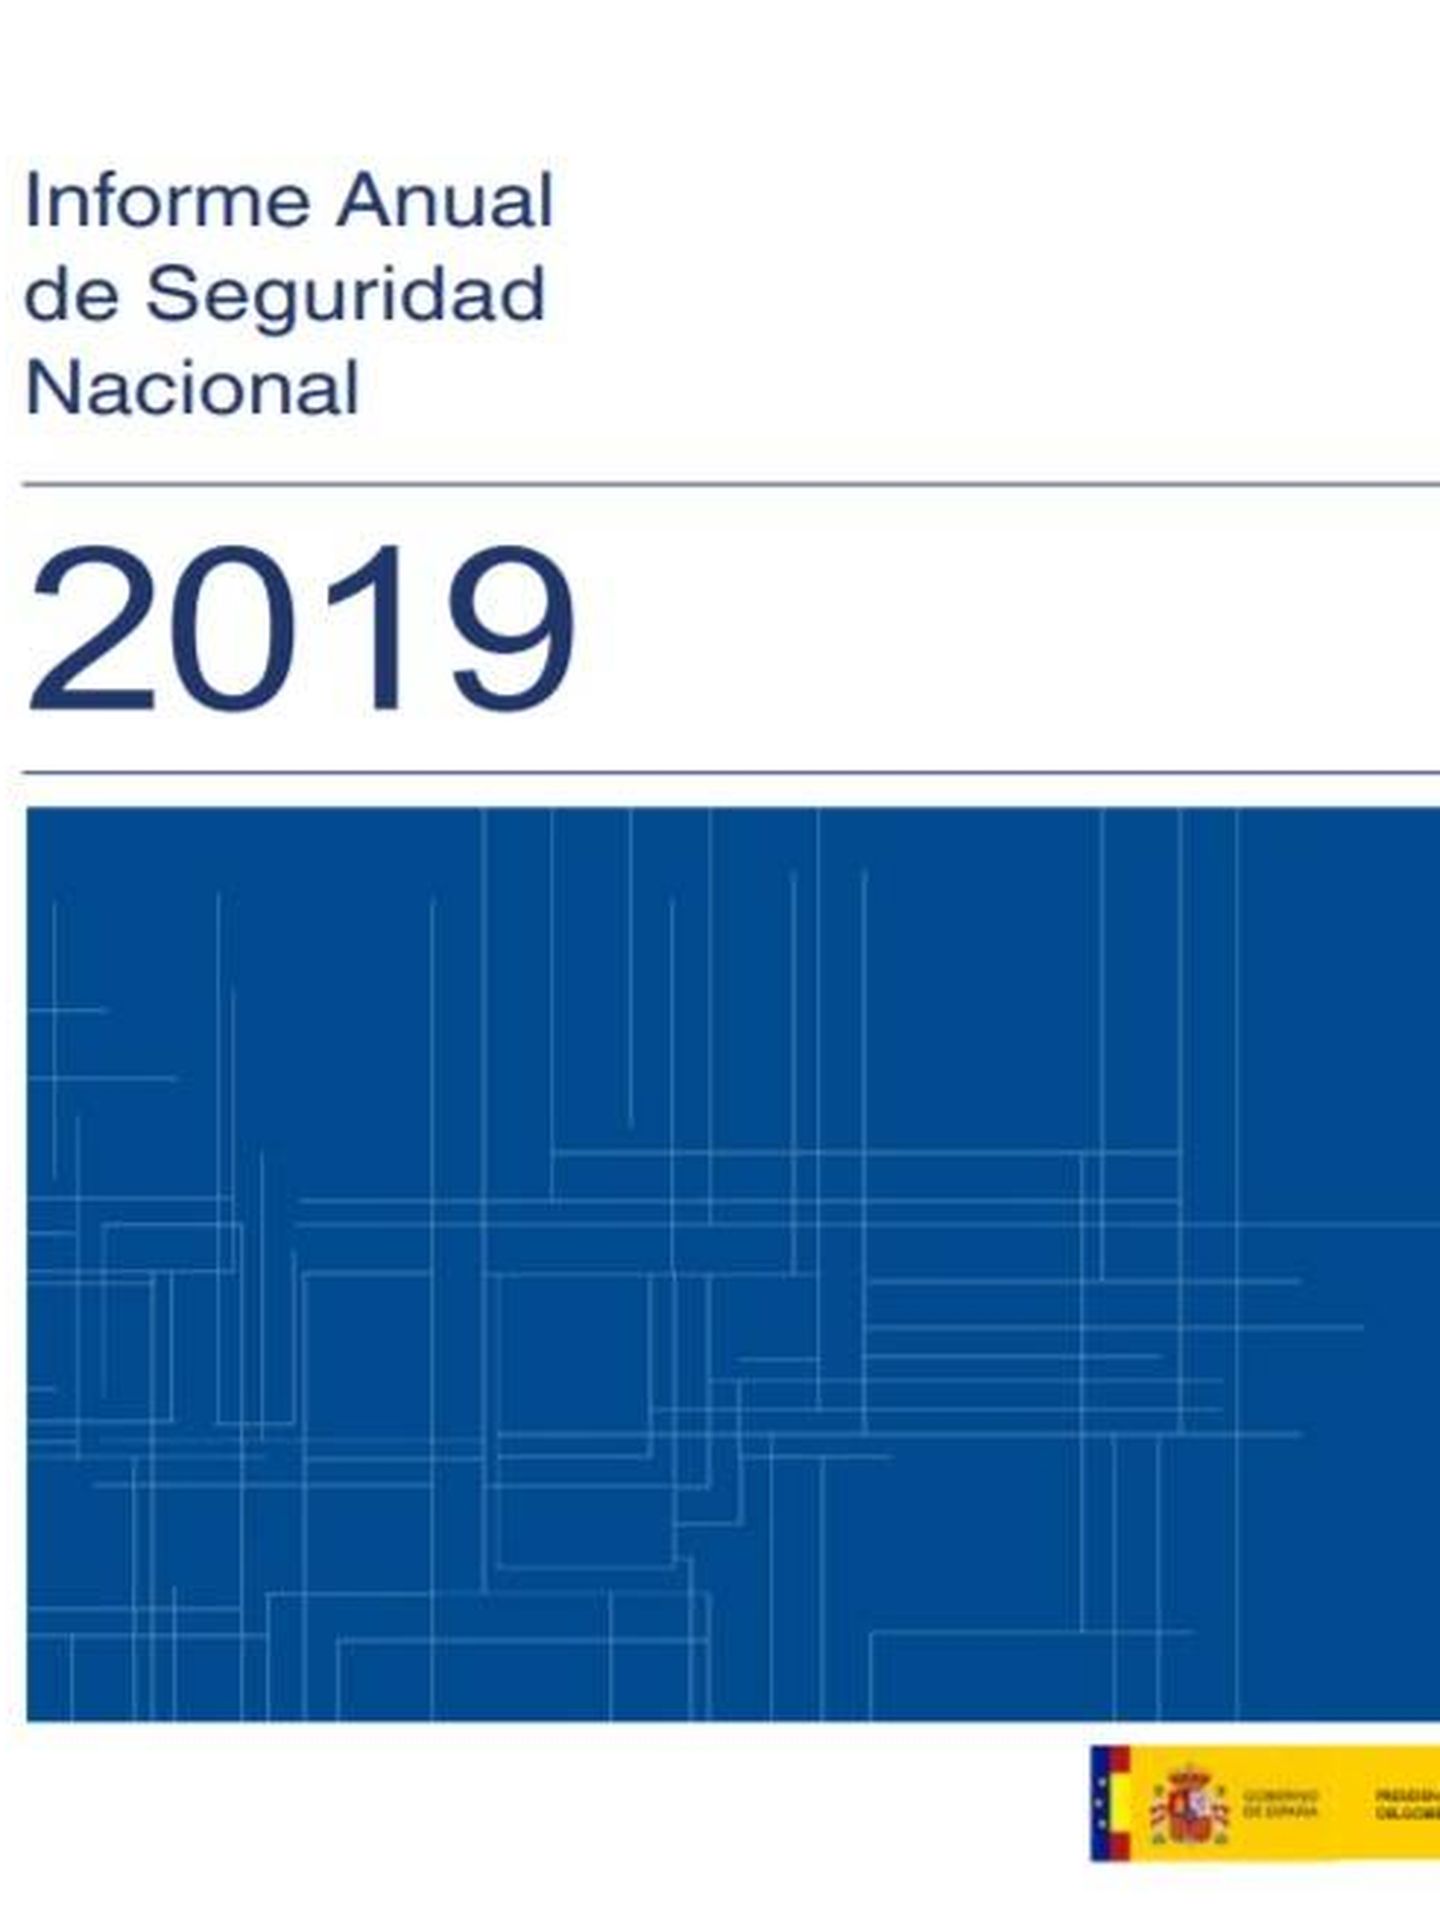 Consulte aquí en PDF el informe anual de seguridad nacional de 2019. (Departamento de Seguridad Nacional)